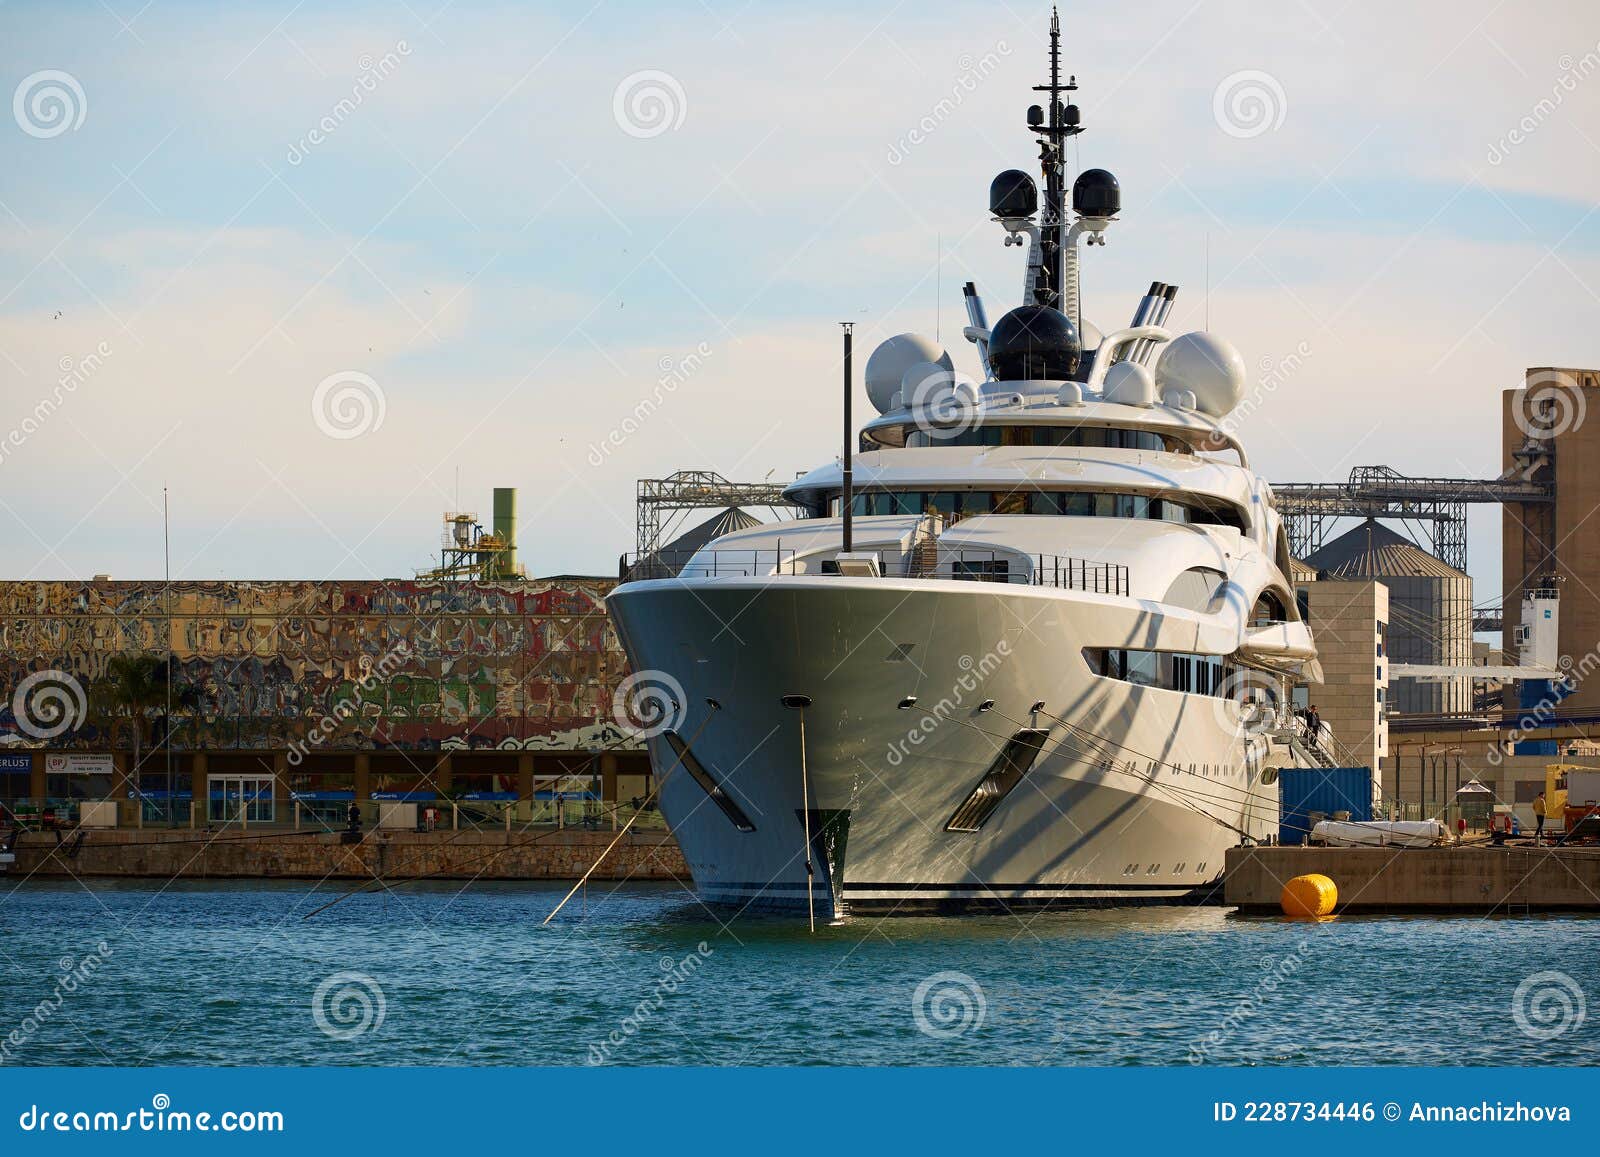 luxury yachts in tarragona